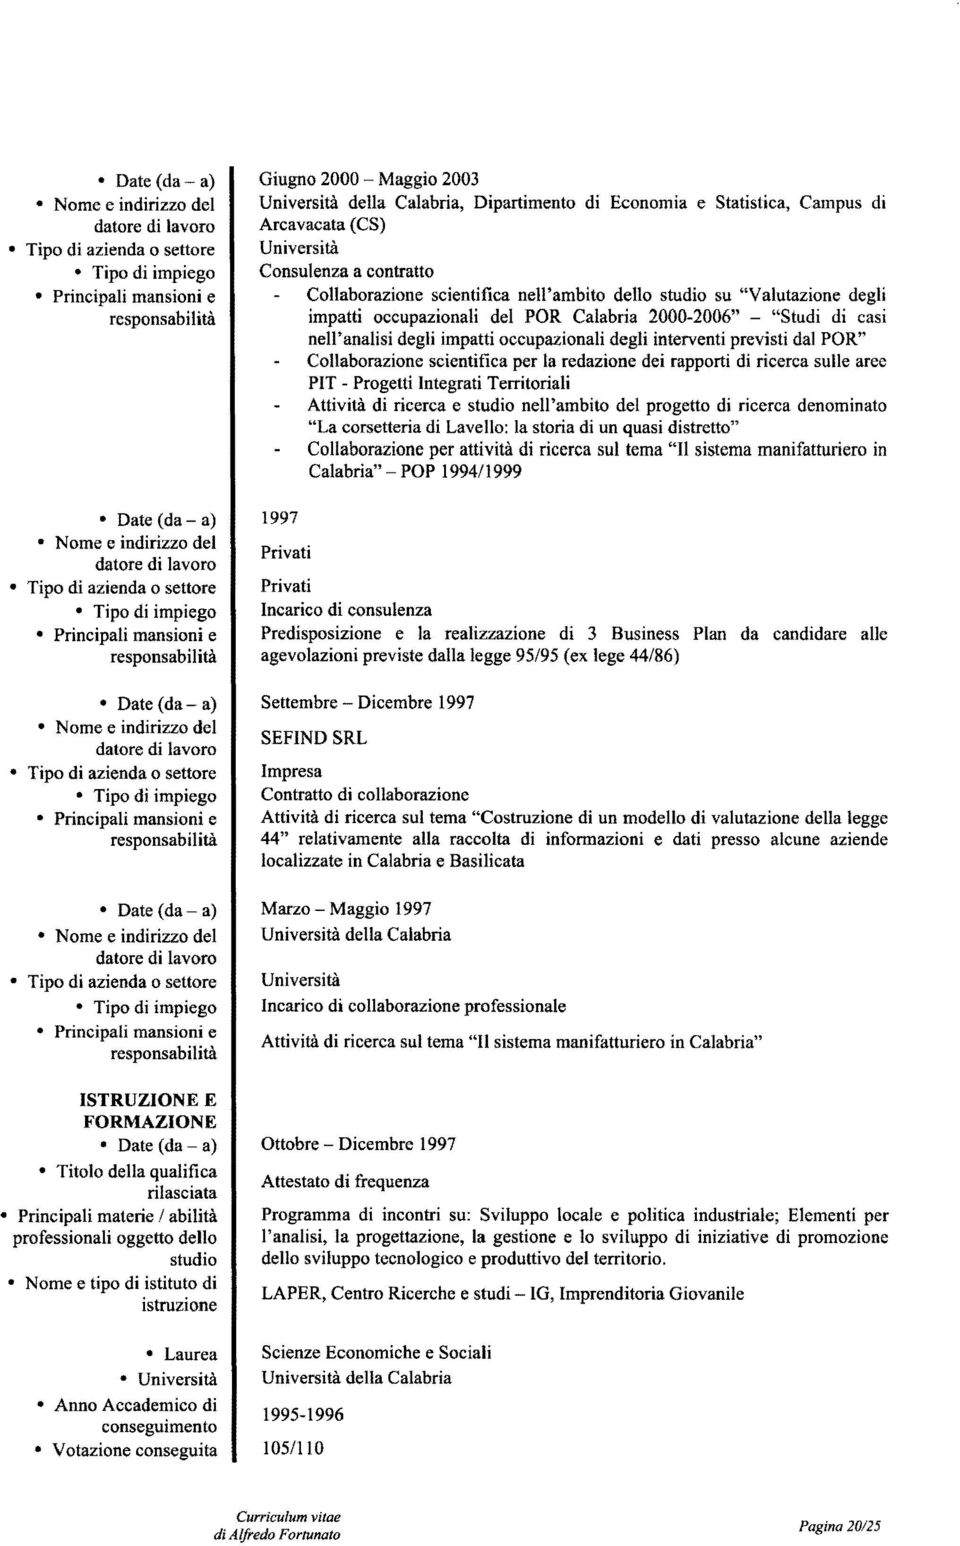 Campus di Arcavacata (CS) Università Consulenza a contratto Collaborazione scientifica nell'ambito dello studio su "Valutazione degli impatti occupazionali del POR Calabria 2000-2006" "Studi di casi